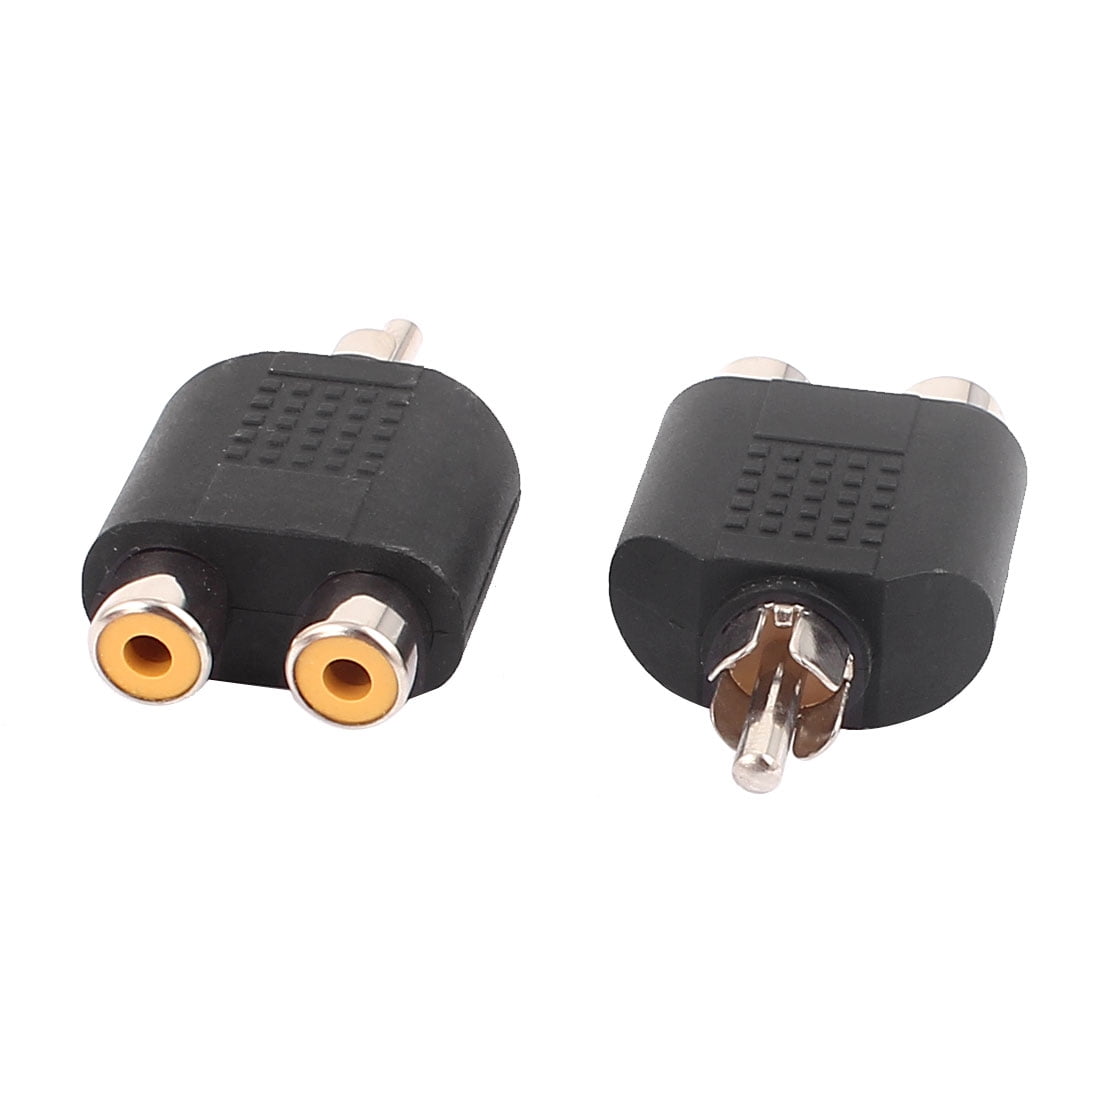 RCA 1 rca mâle vers 2 rca femelles audio y splitter plug m/f adaptateur connecteur 